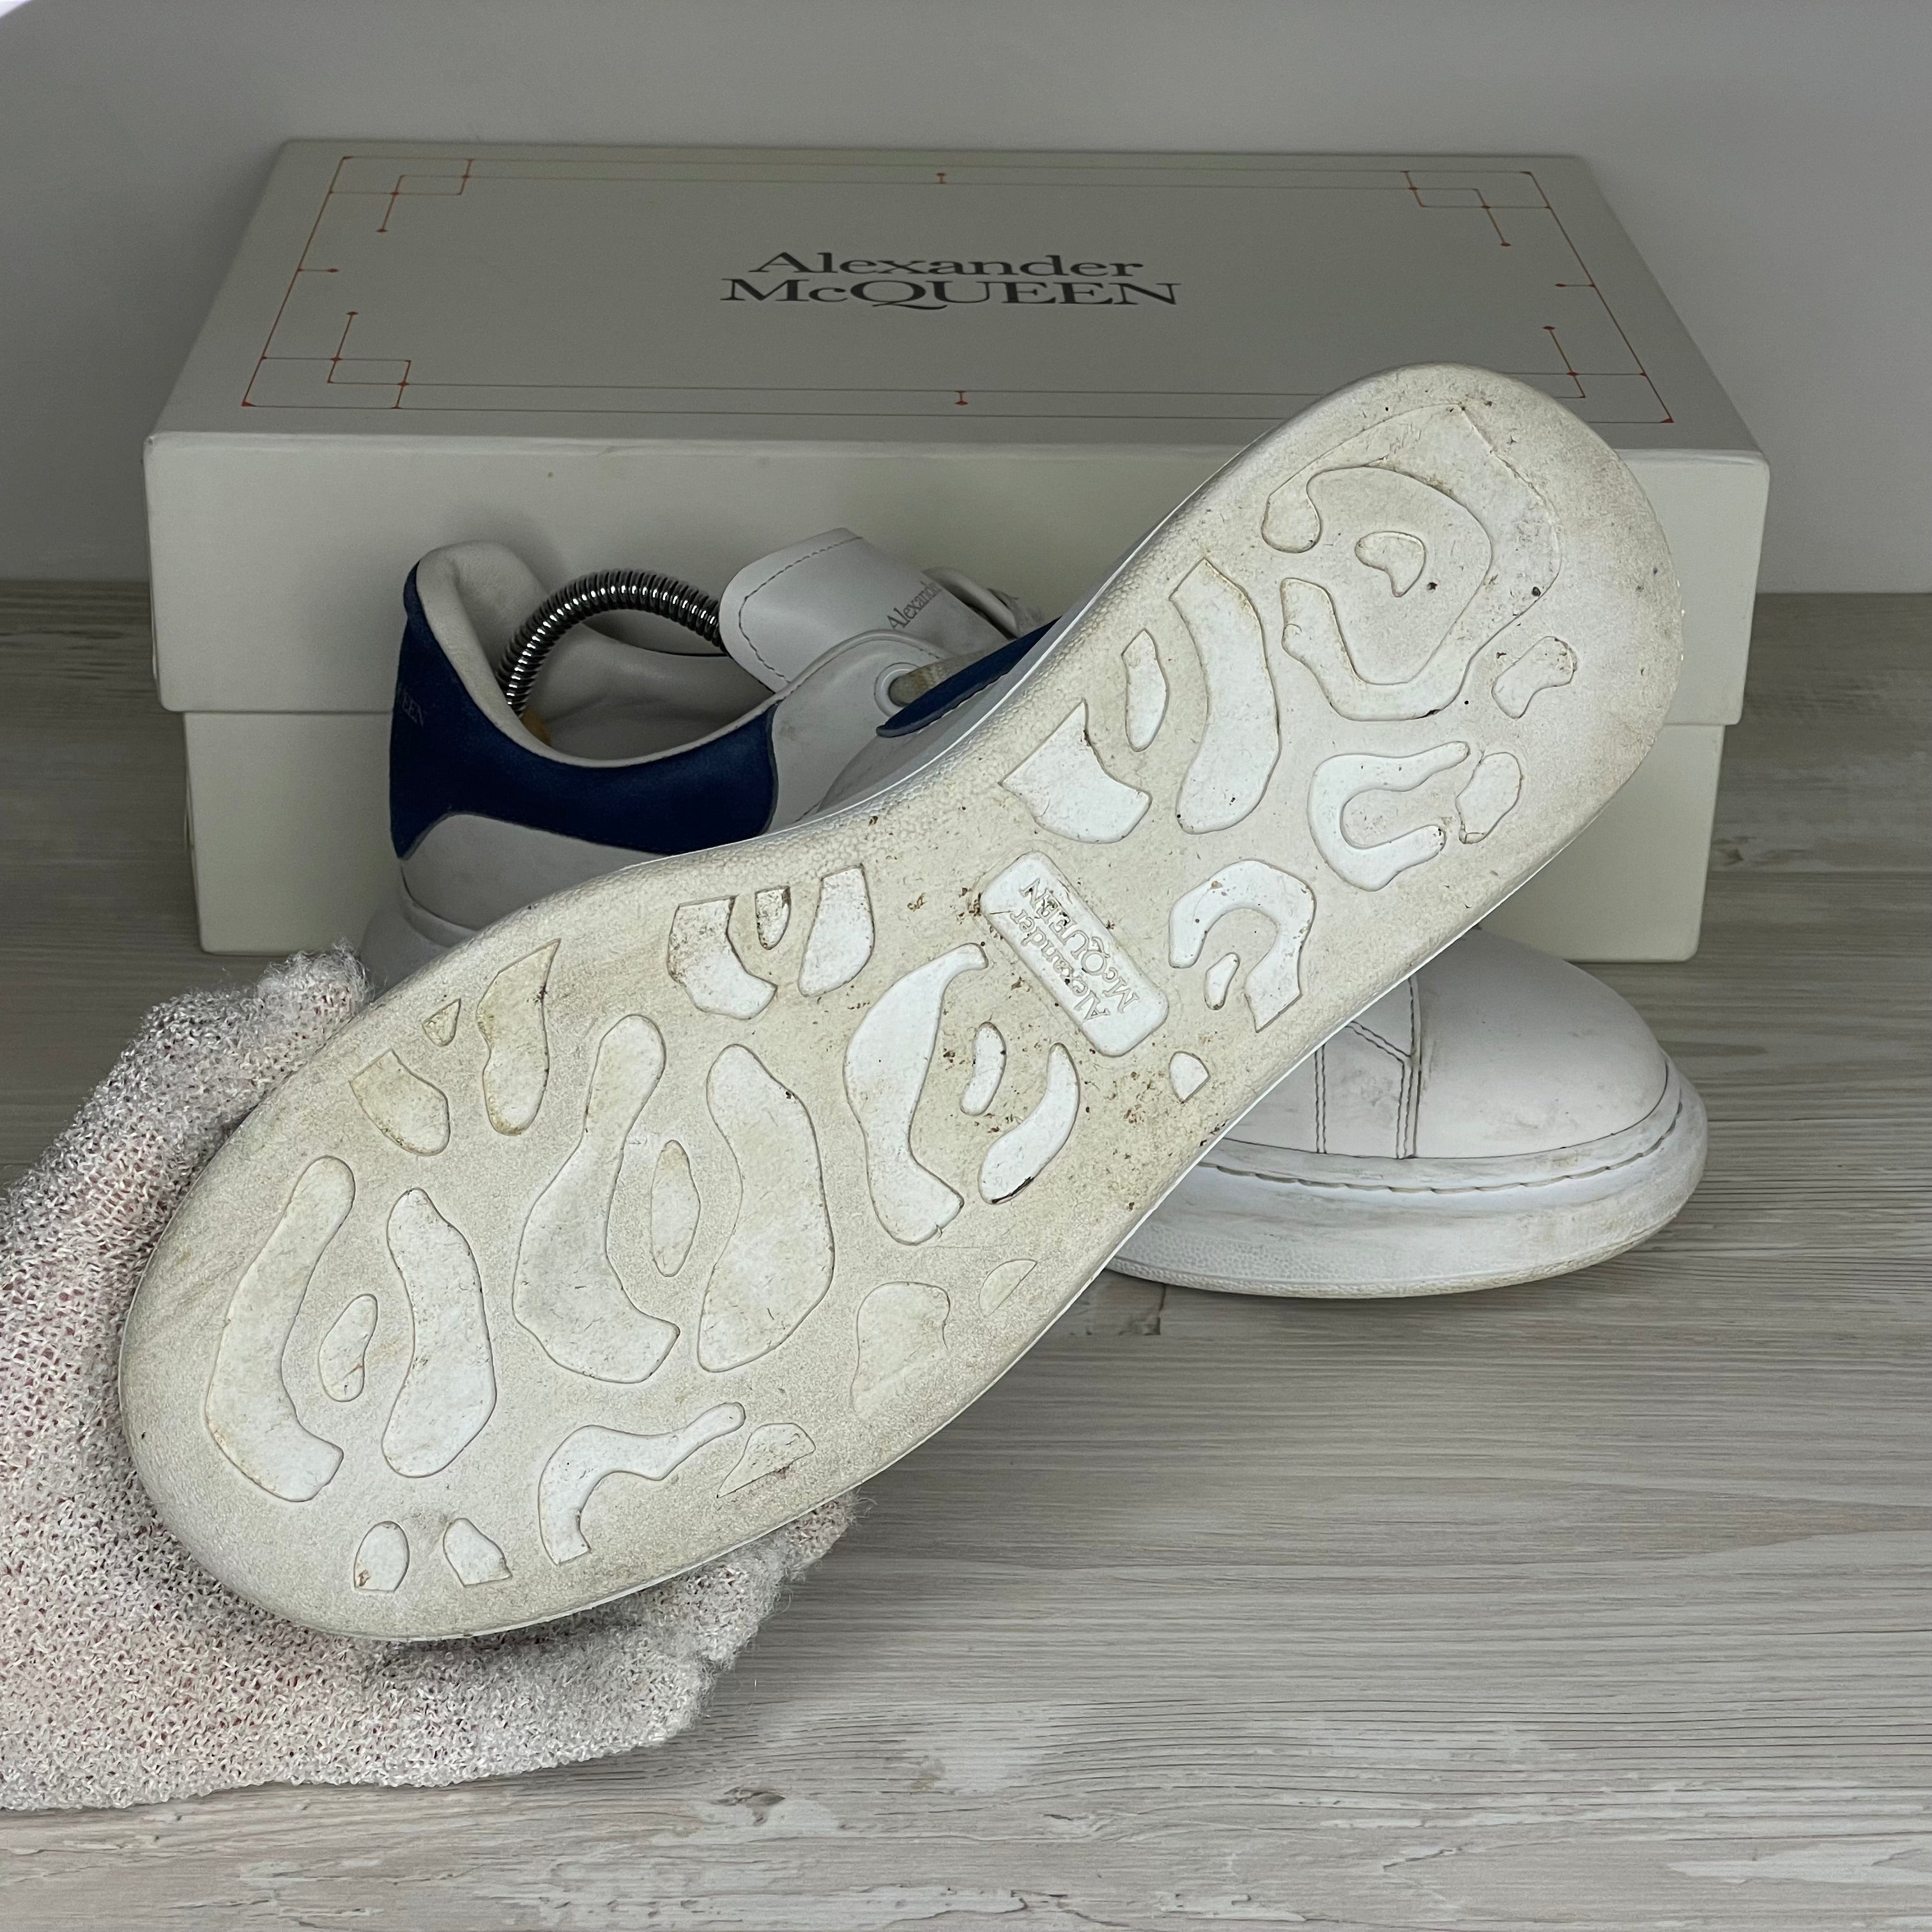 Alexander McQueen Sneakers, Herre 'Hvid' Ruskind Blå Hæld Oversized (42.5) 🔵